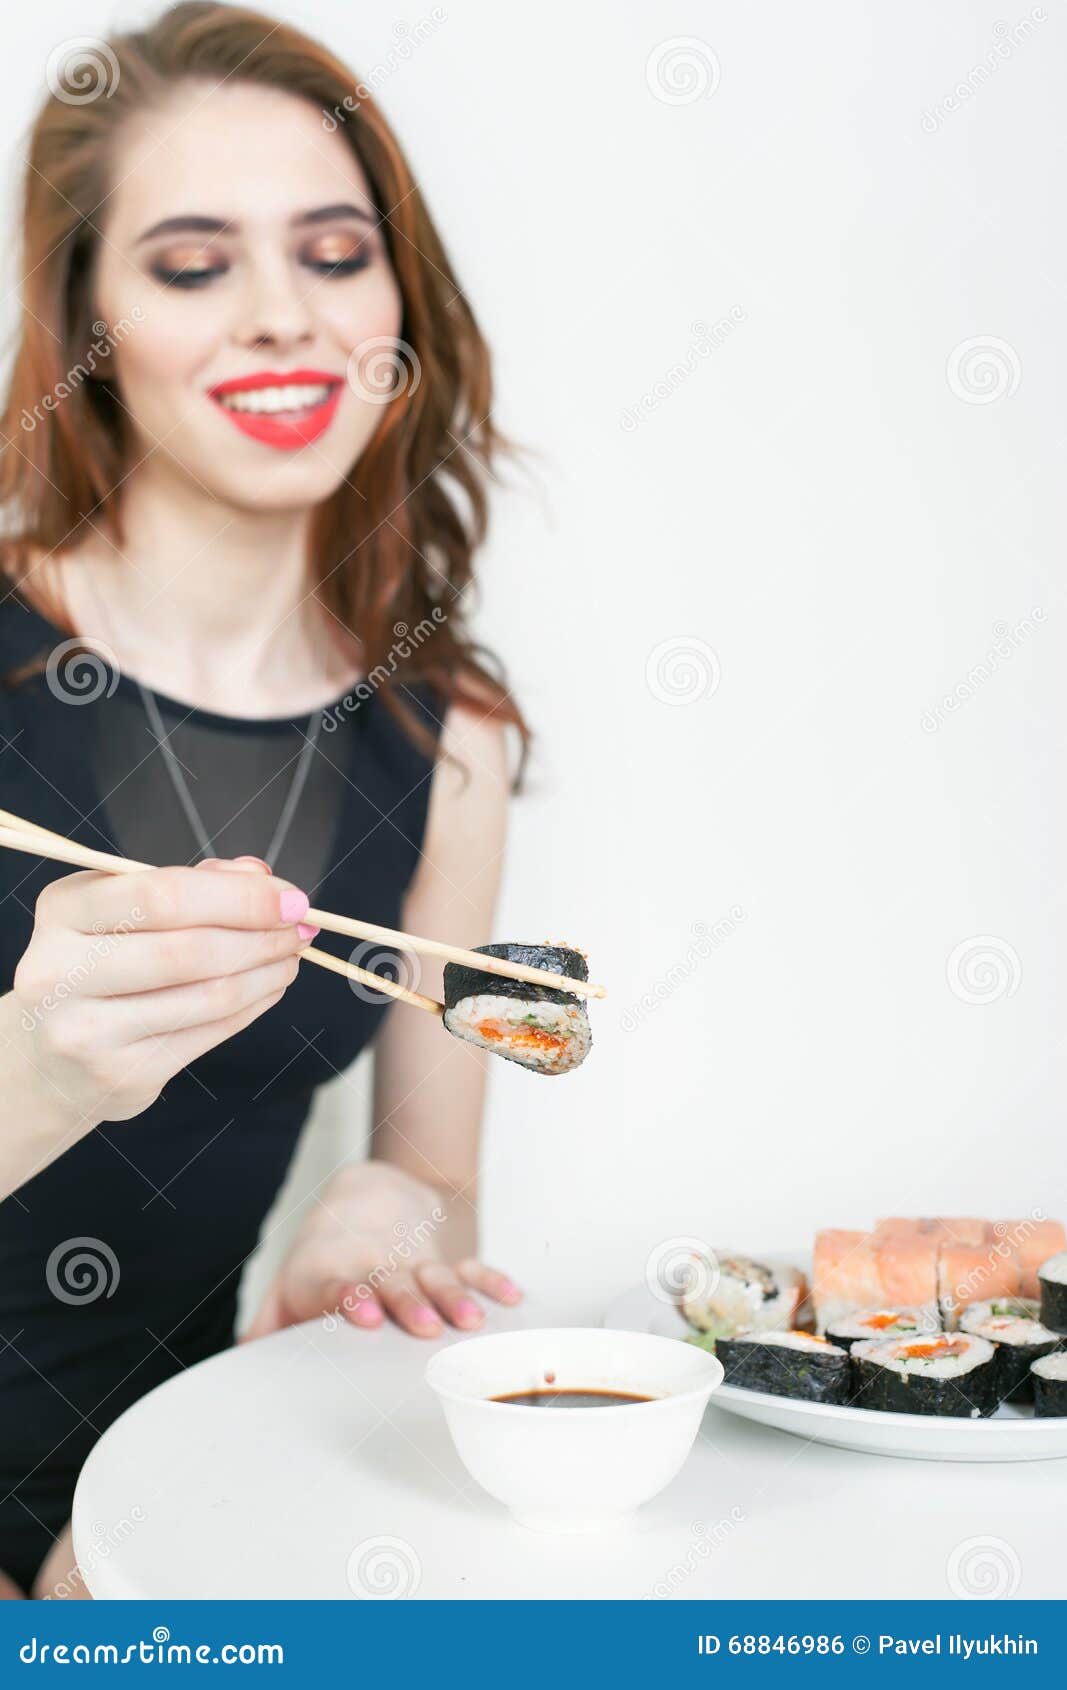 吃寿司的美女素材图片下载-素材编号00803986-素材天下图库